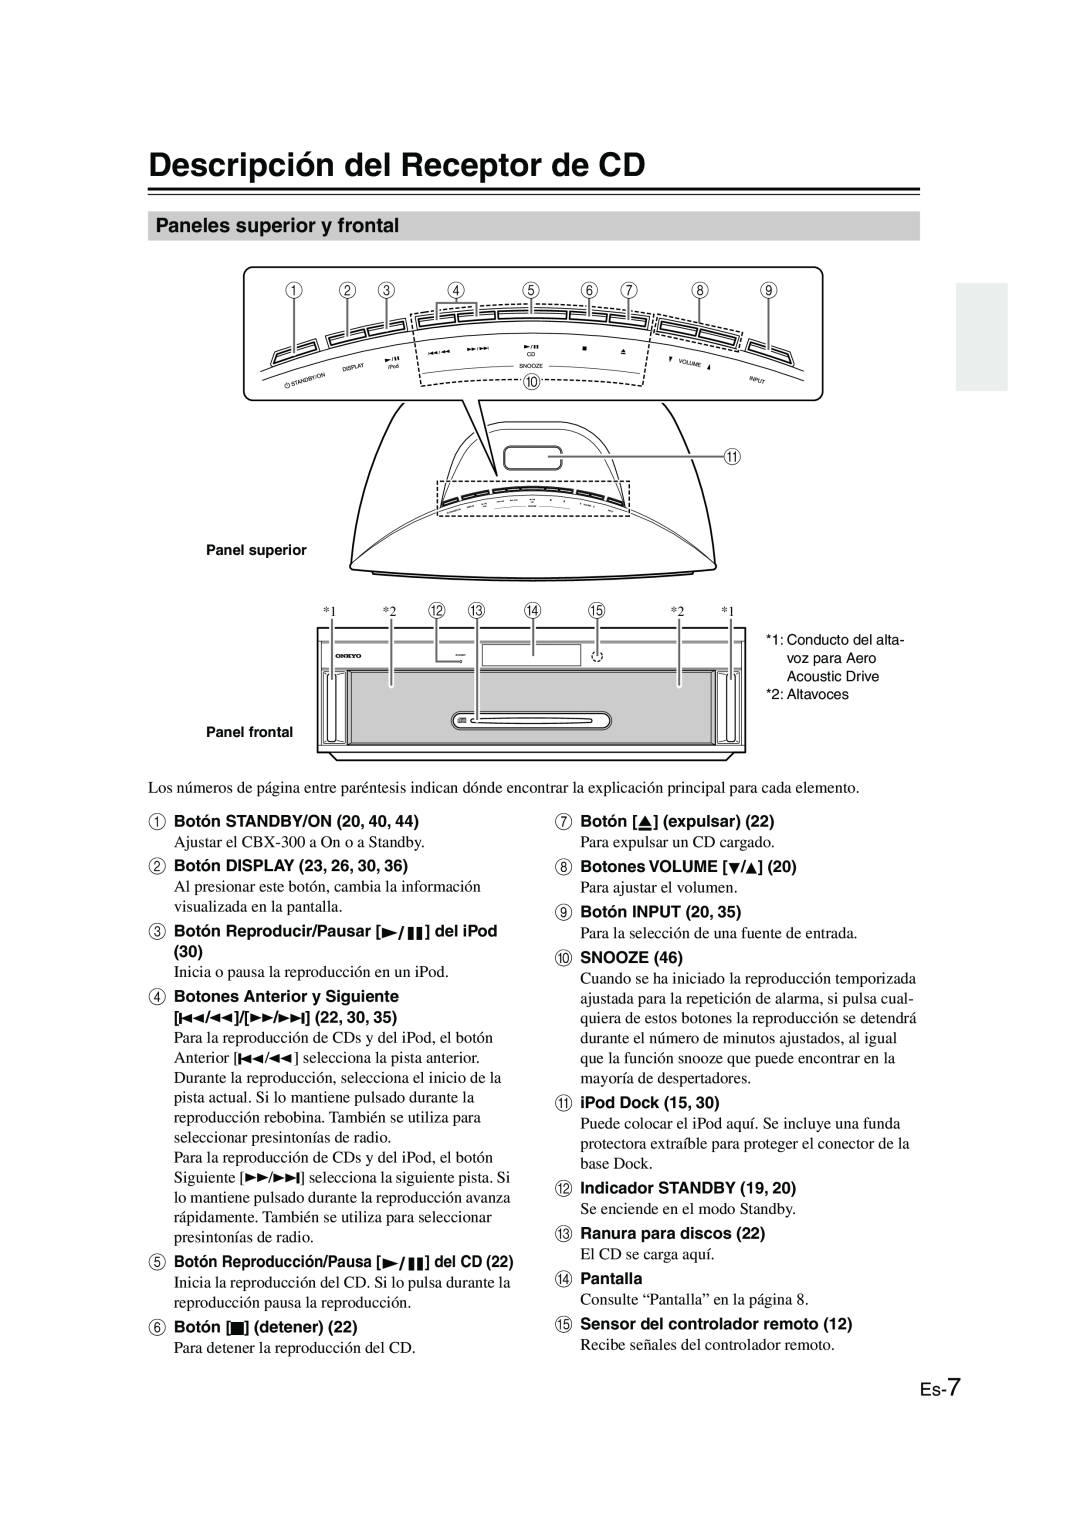 Onkyo CBX-300 instruction manual Descripción del Receptor de CD, Paneles superior y frontal 